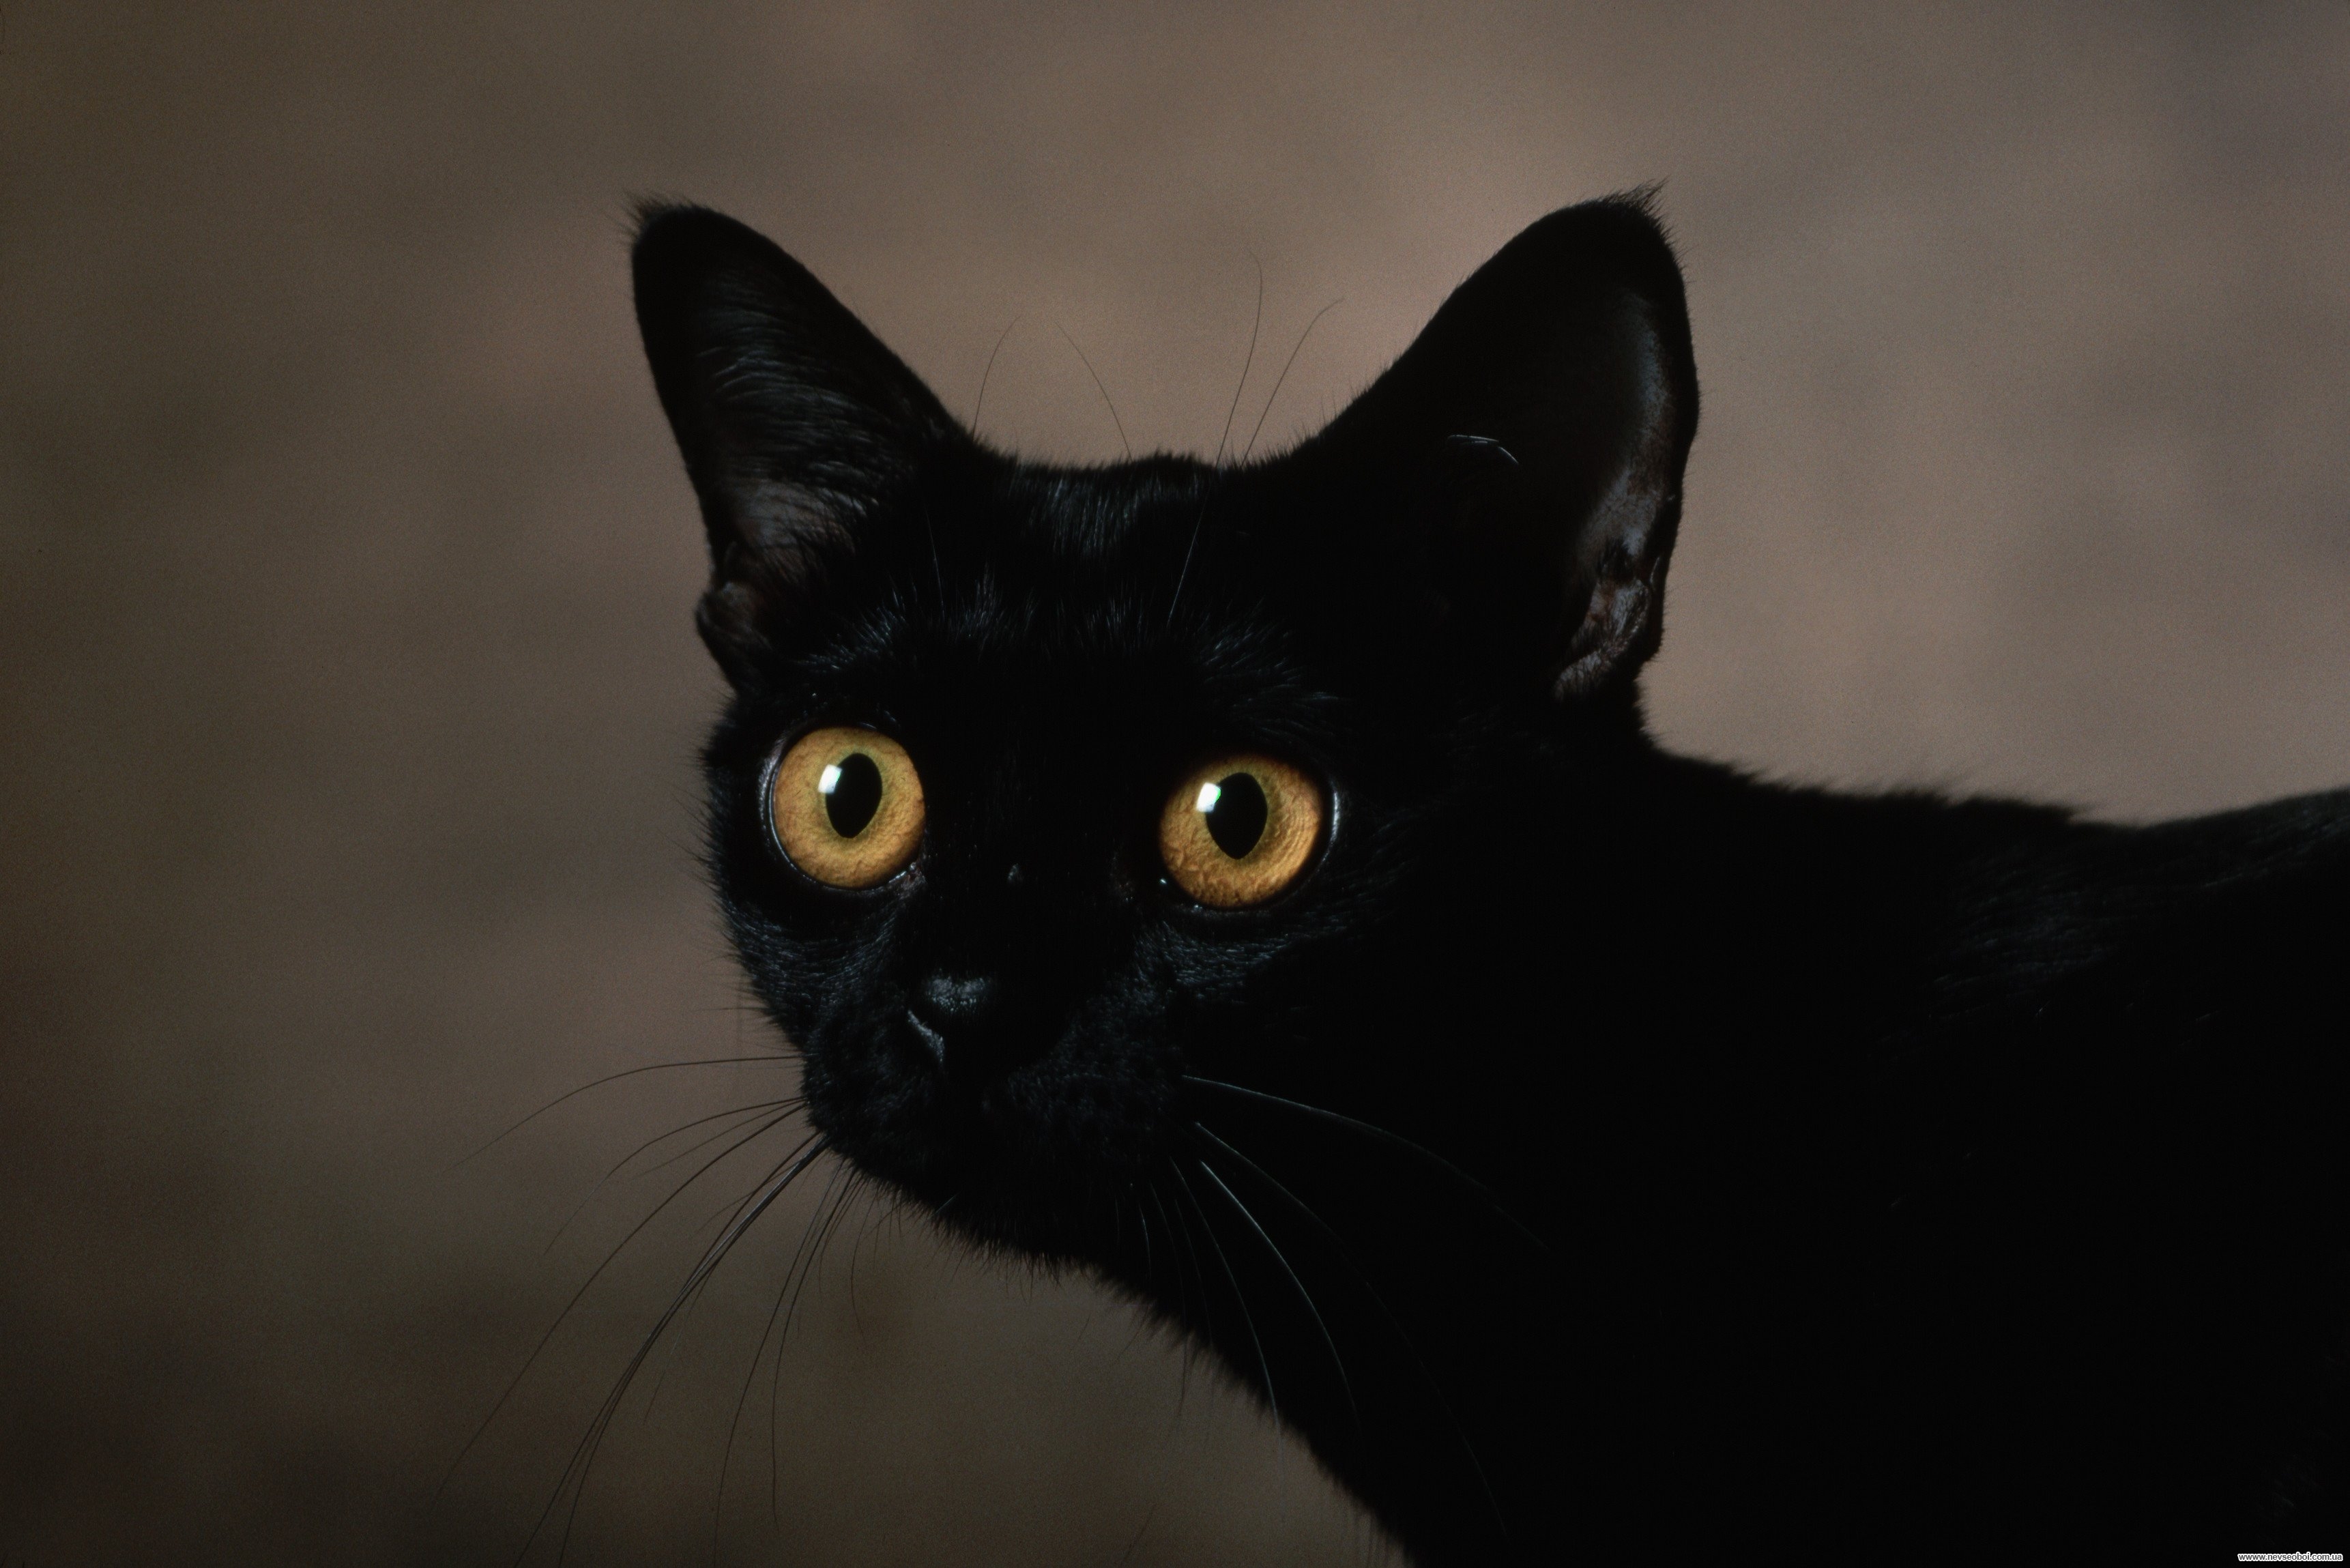 Черные кошки 9. Бомбейская кошка с зелеными глазами. Охос азулес черный. Бомбейская черная кошка. Порода кошек Охос азулес.